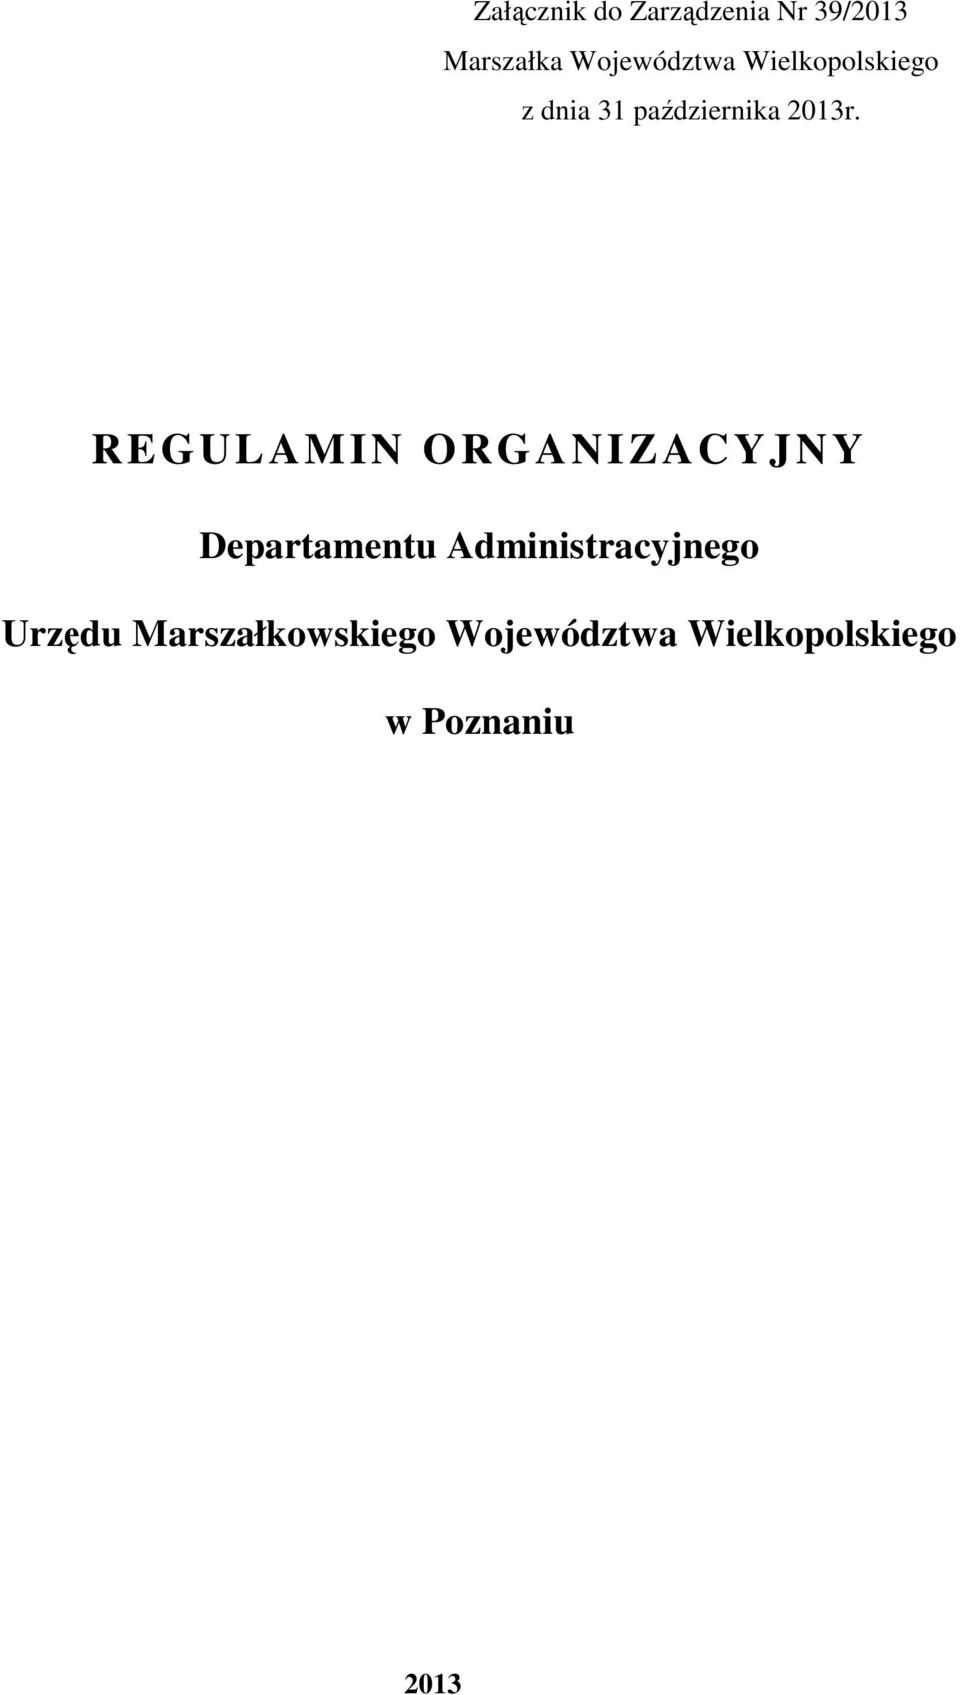 REGULAMIN ORGANIZACYJNY Departamentu Administracyjnego